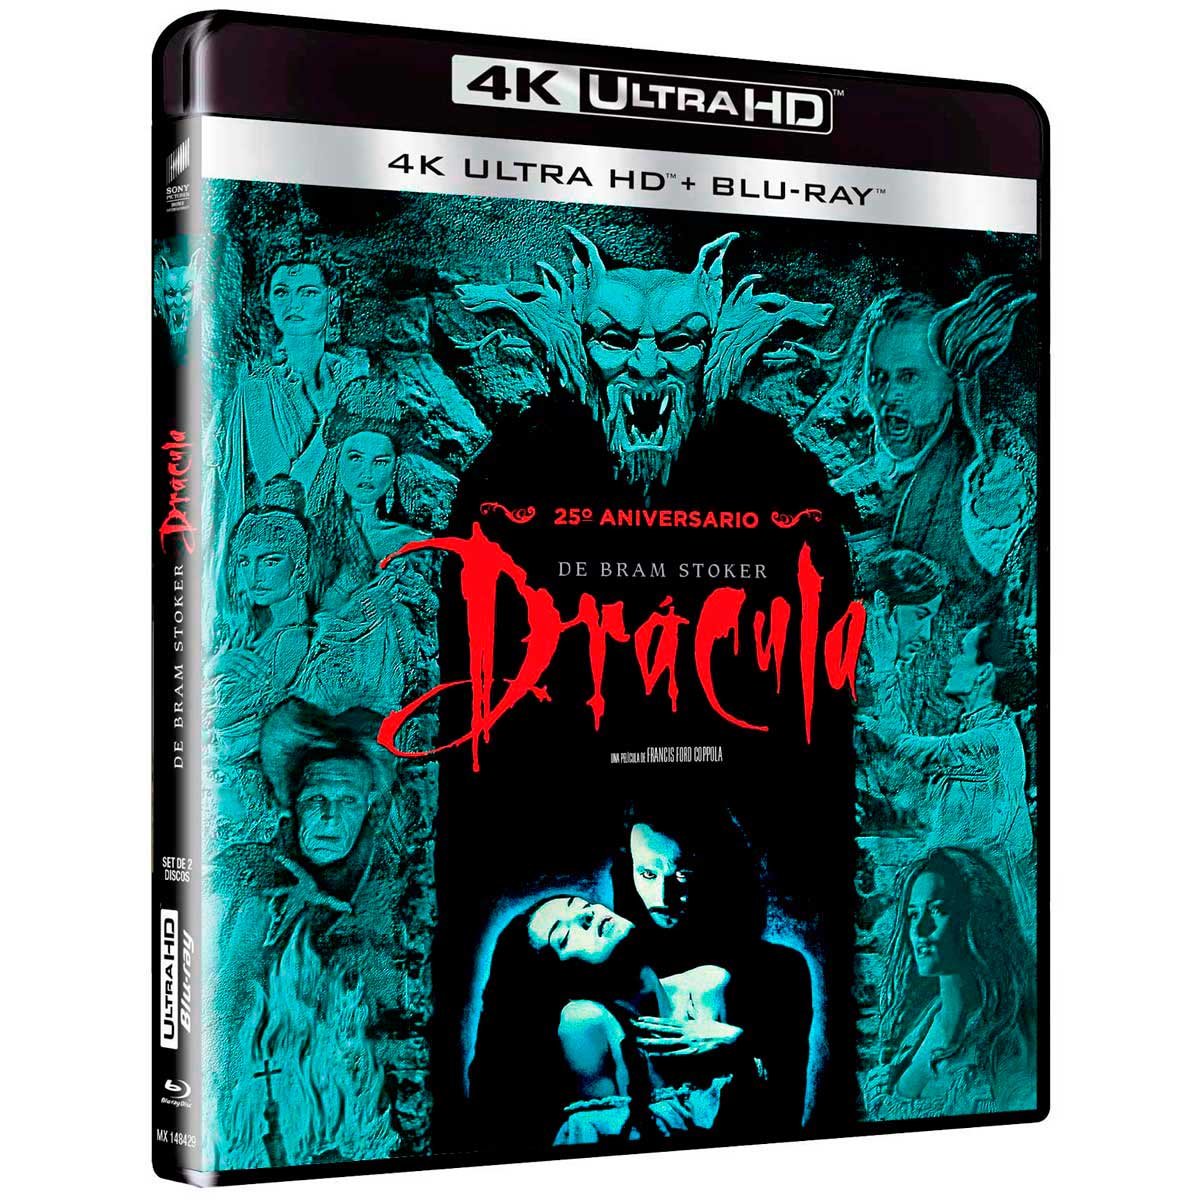 4K Ultra Hd + Blu Ray Dracula de Bram Stoker